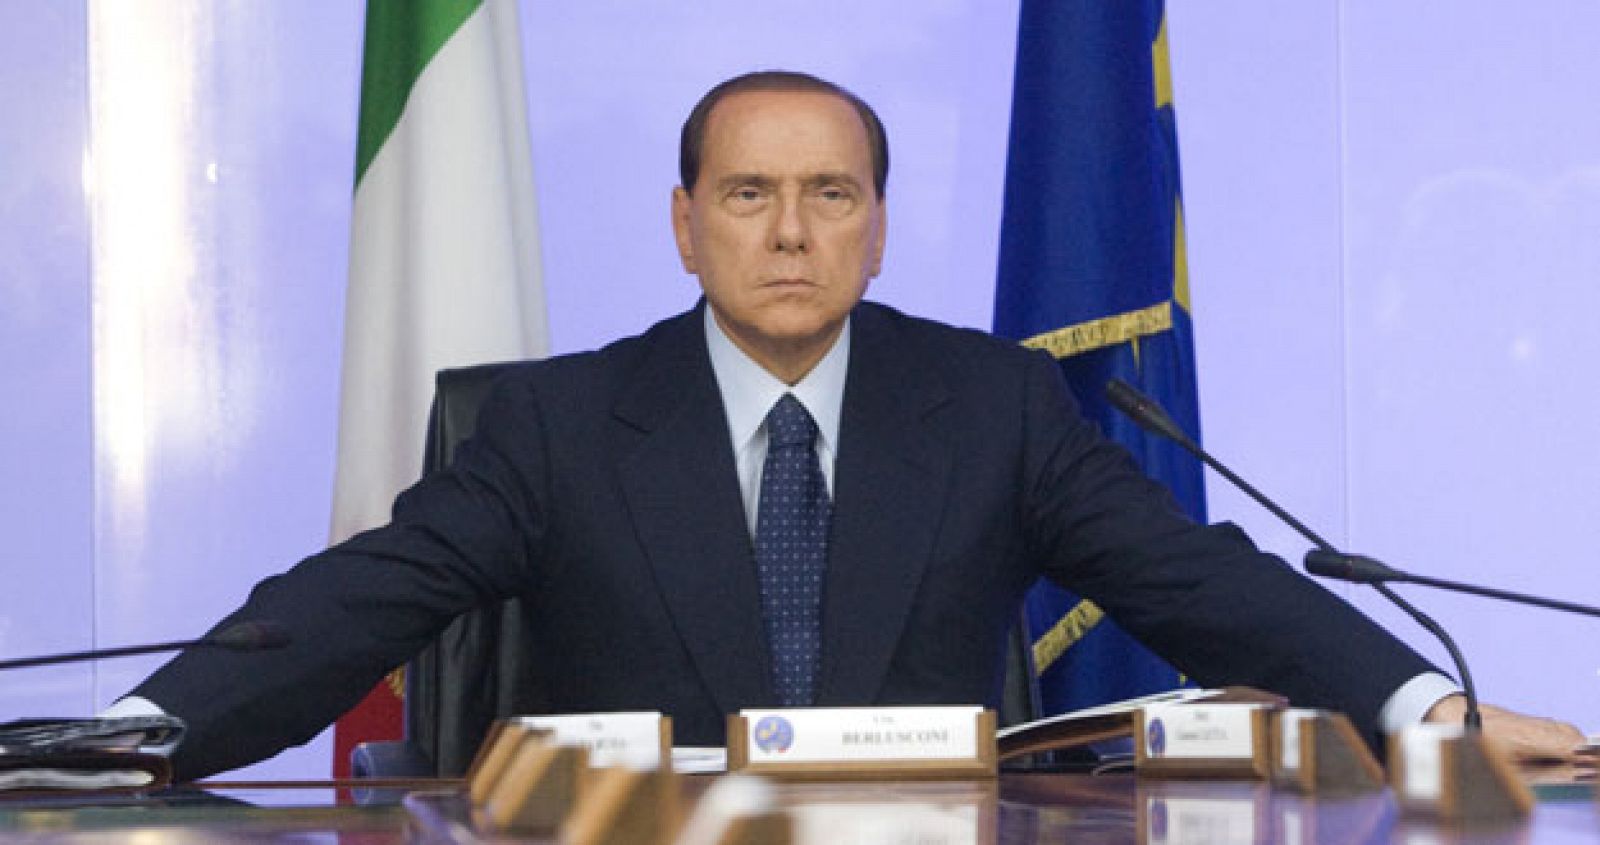 El primer ministro italiano, Silvio Berlusconi, ha asegurado que él y su Gobierno tienen a todo el mundo en su contra, excepto al pueblo, a quien agradeció el apoyo que, según él, le sigue dando.